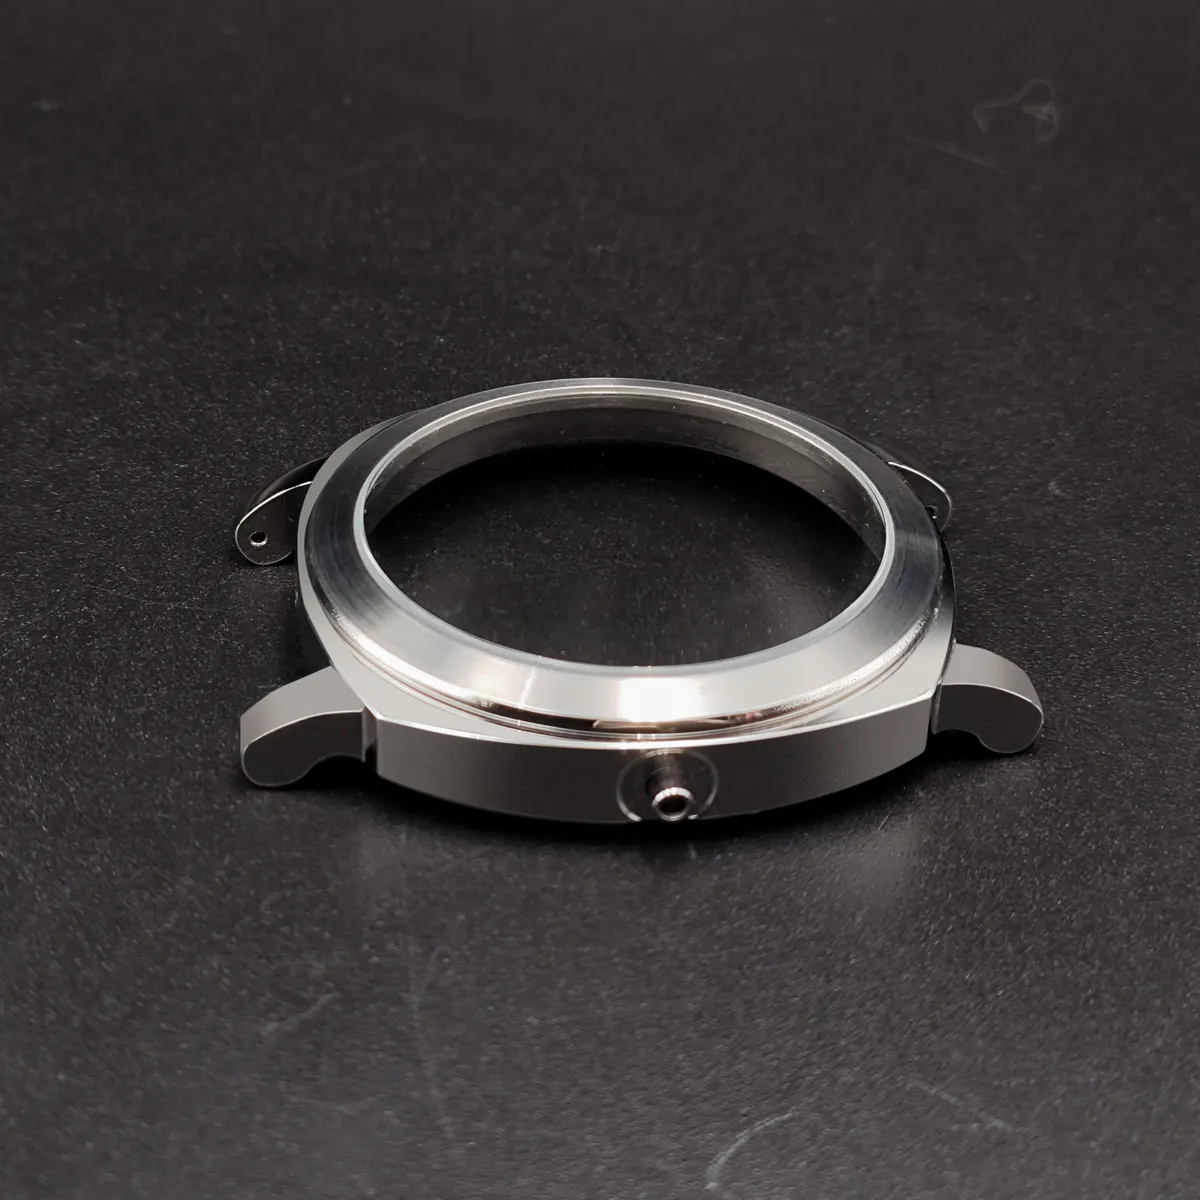 Üretici OEM özel 10 20ATM safir kristal dalgıç izle dövme paslanmaz çelik pres vaka